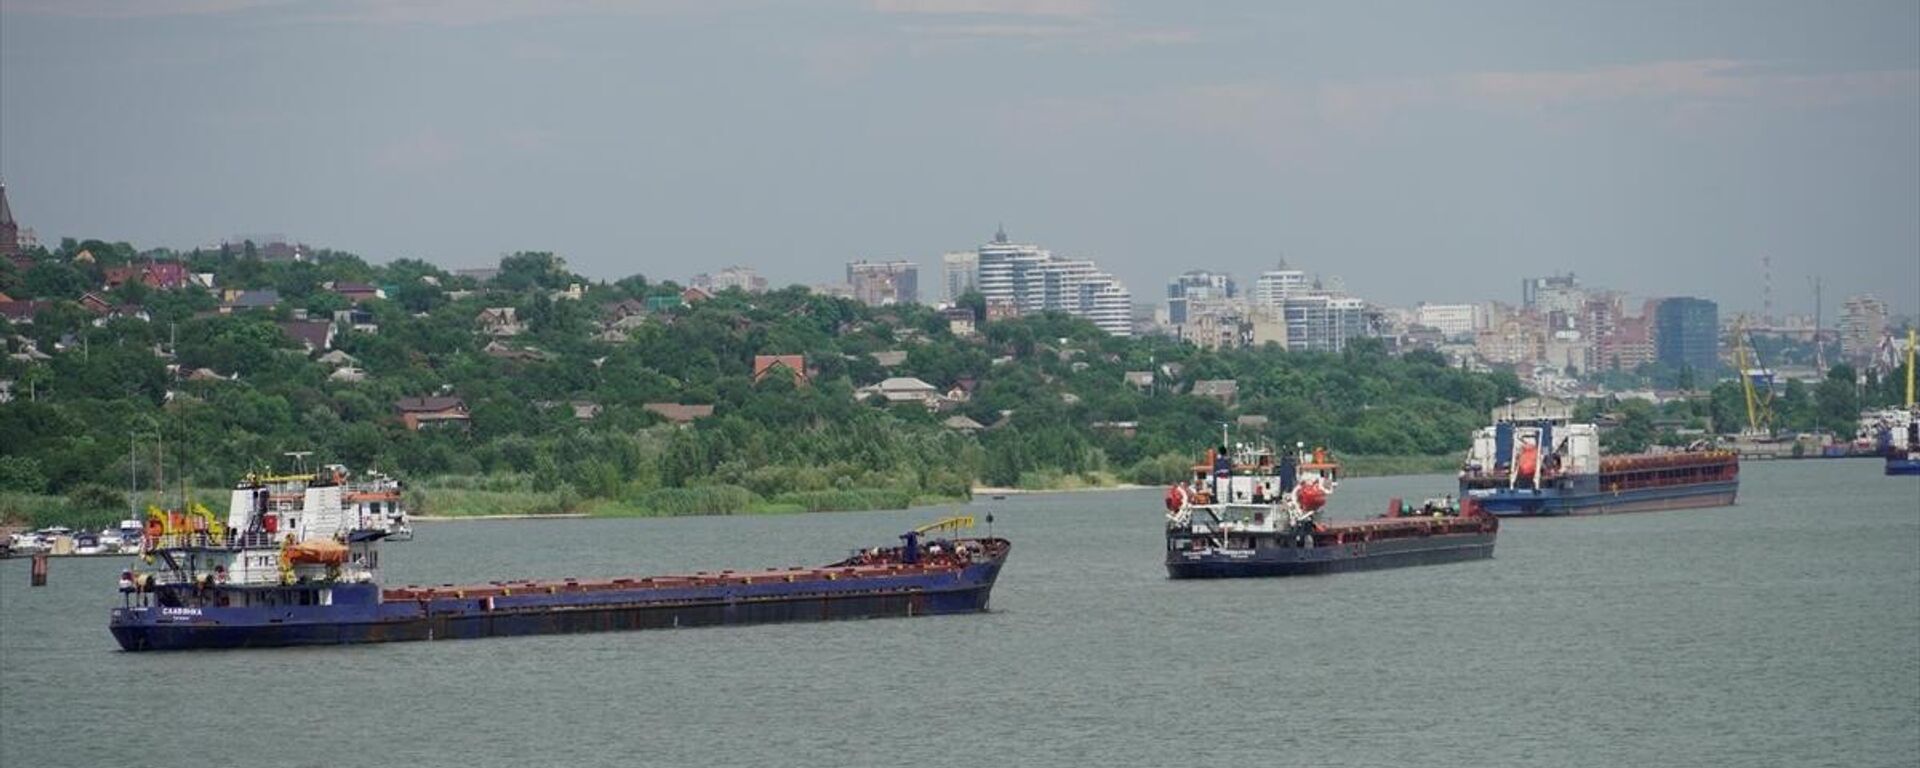 Rusya'nın Rostov-On-Don Limanı'nda, sevkiyatı yapılacak tahıllar gemilere yükleniyor - Sputnik Türkiye, 1920, 01.08.2022